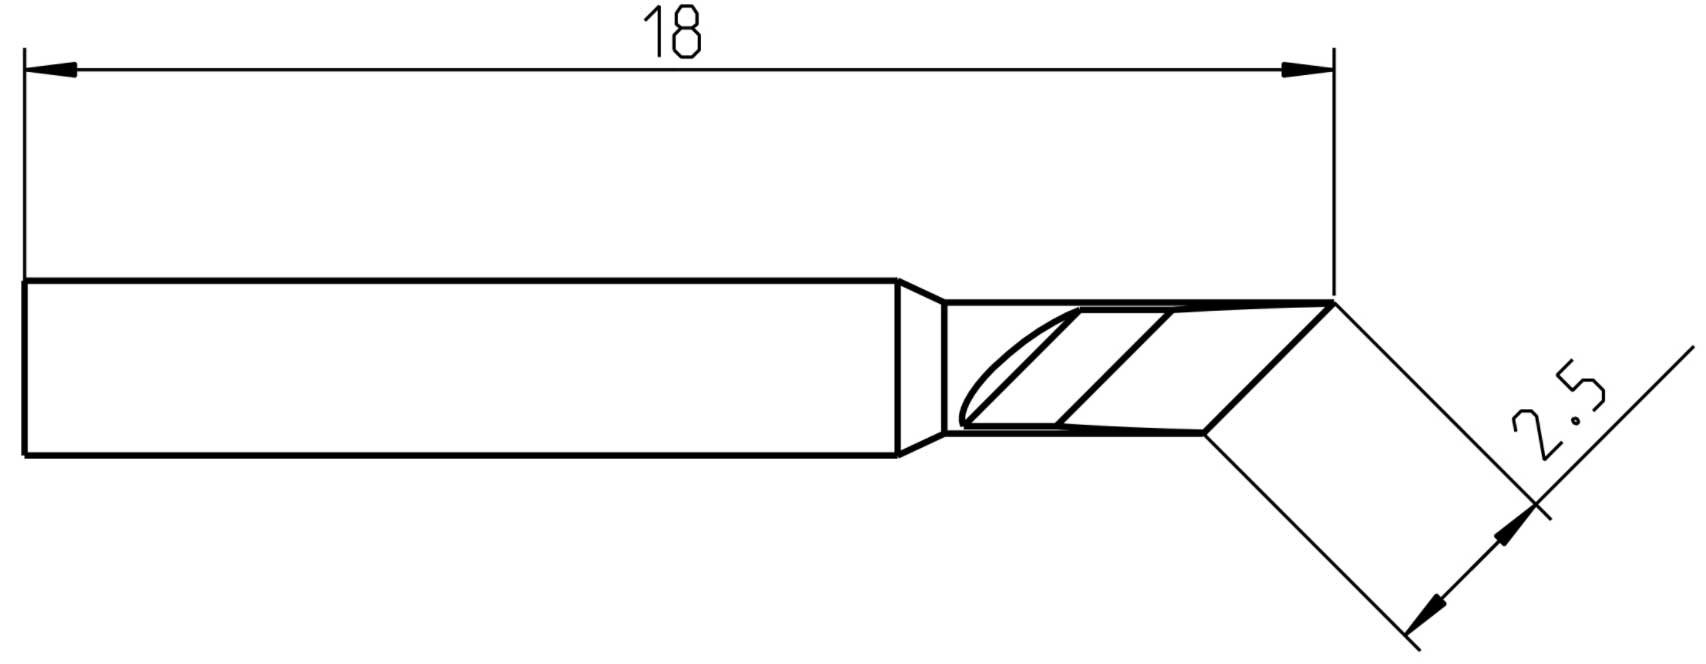 Weller RTP025K active blade tip 2.5 mm for WXPP - T0050104799